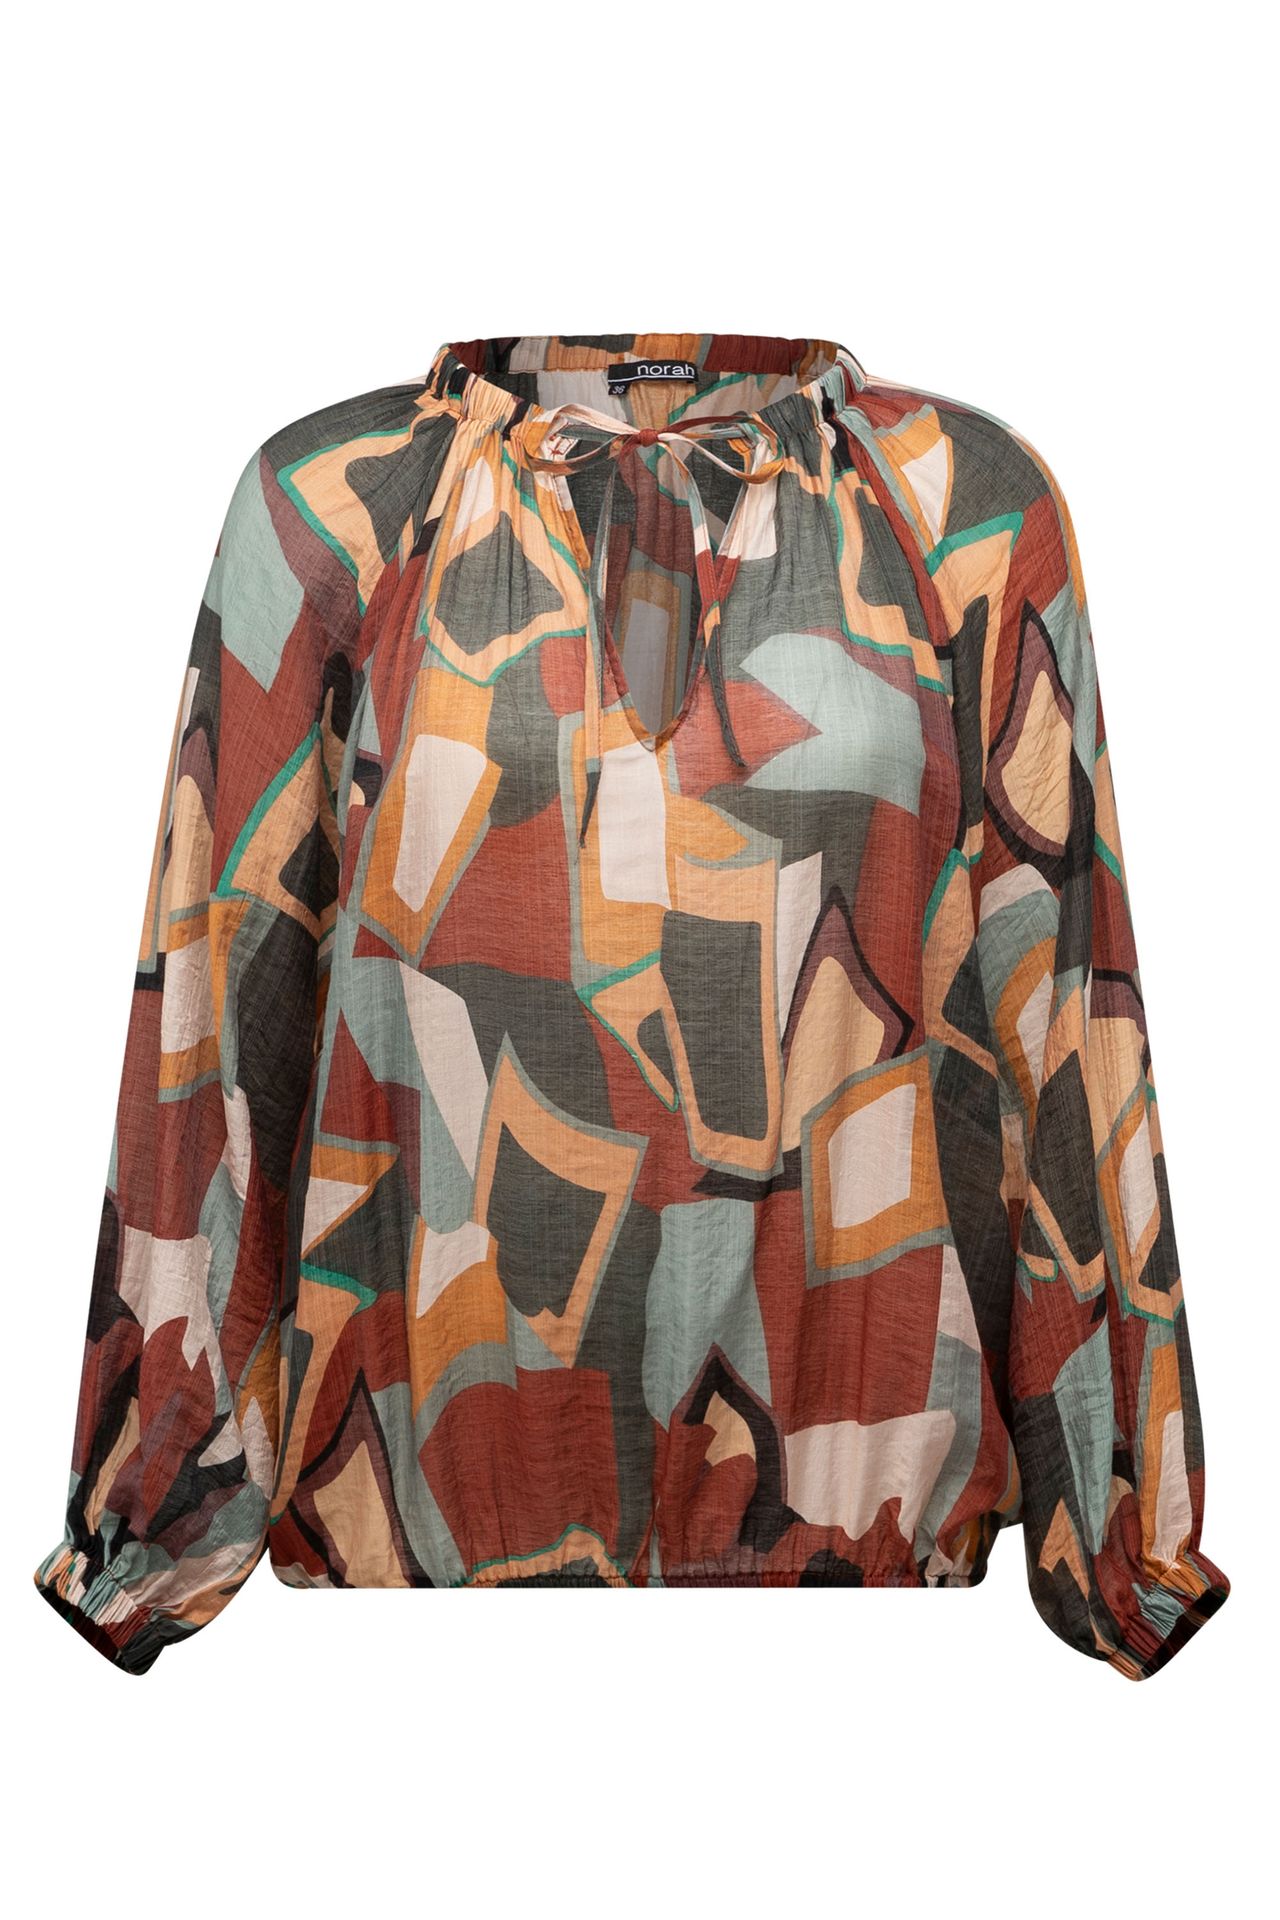 Norah Meerkleurige blouse met pofmouwen brown multicolor 213512-220